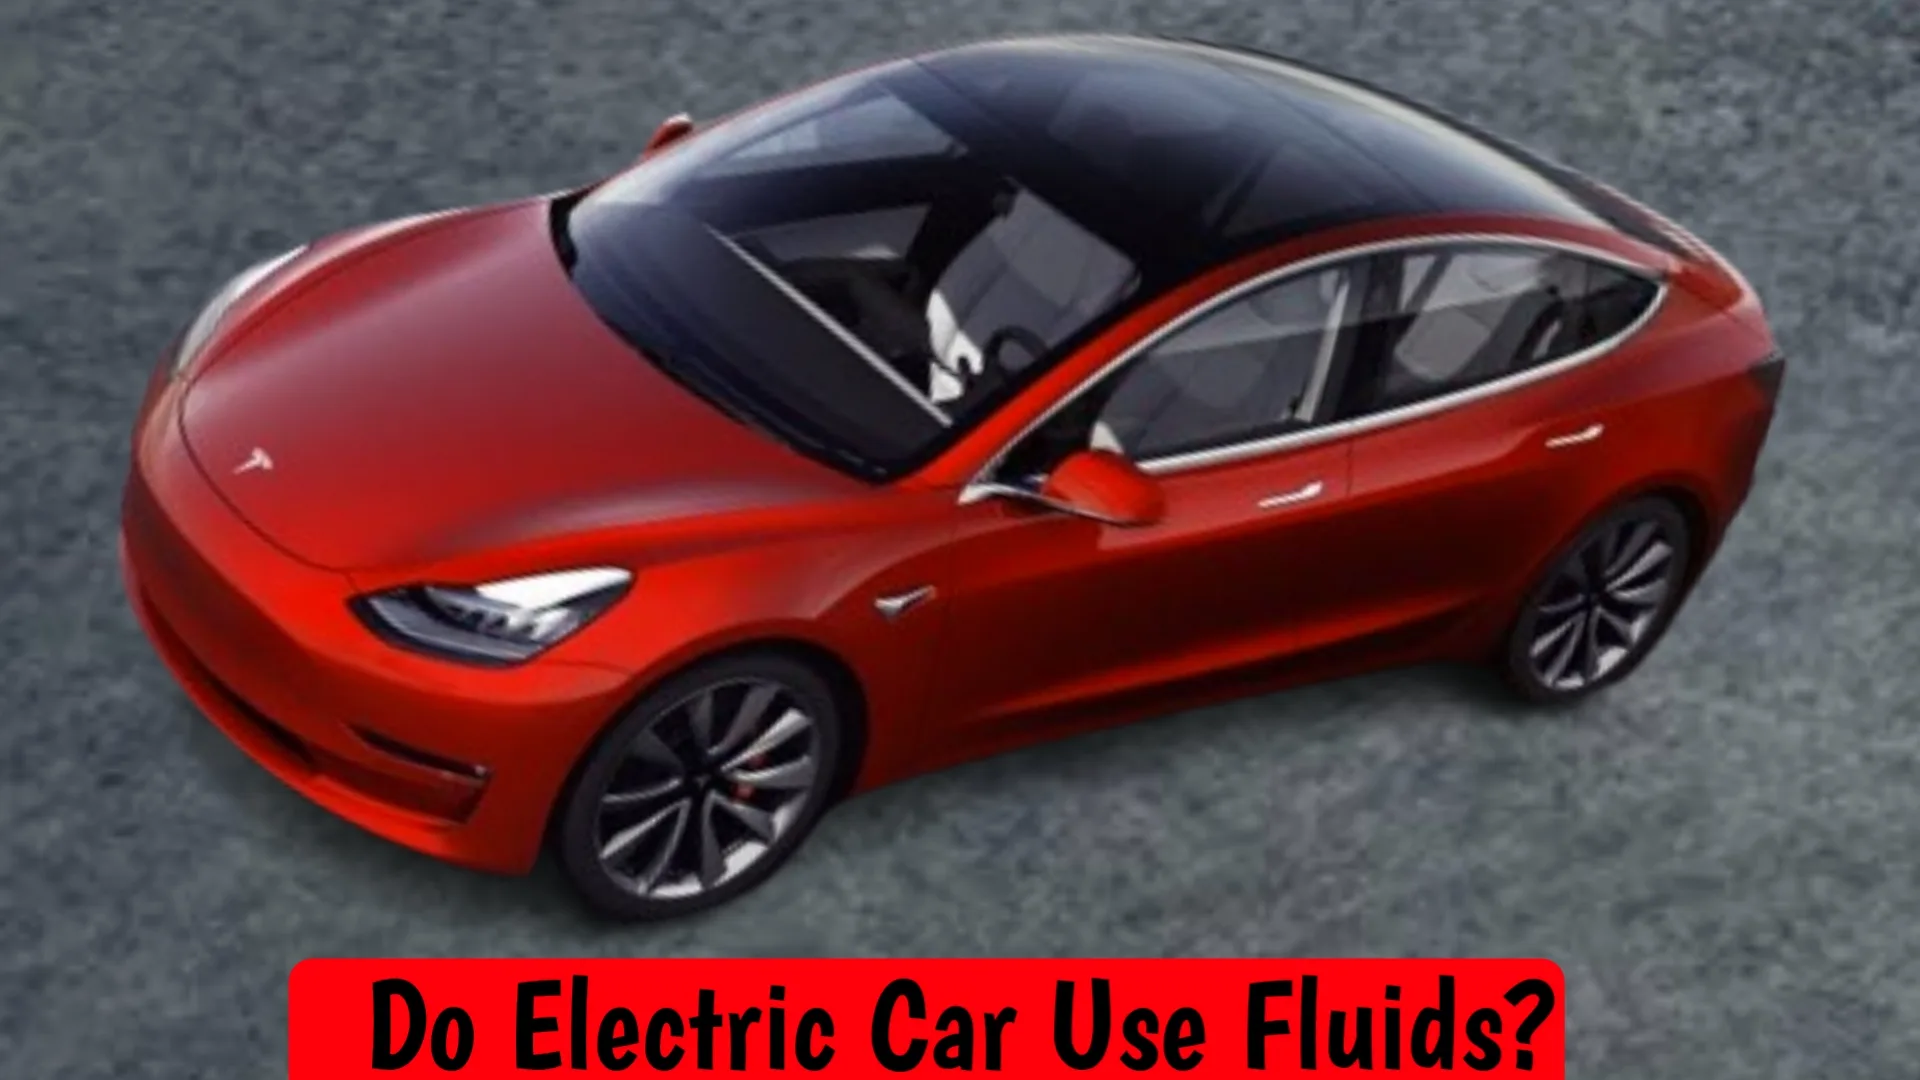 Do electric cars use fluids?